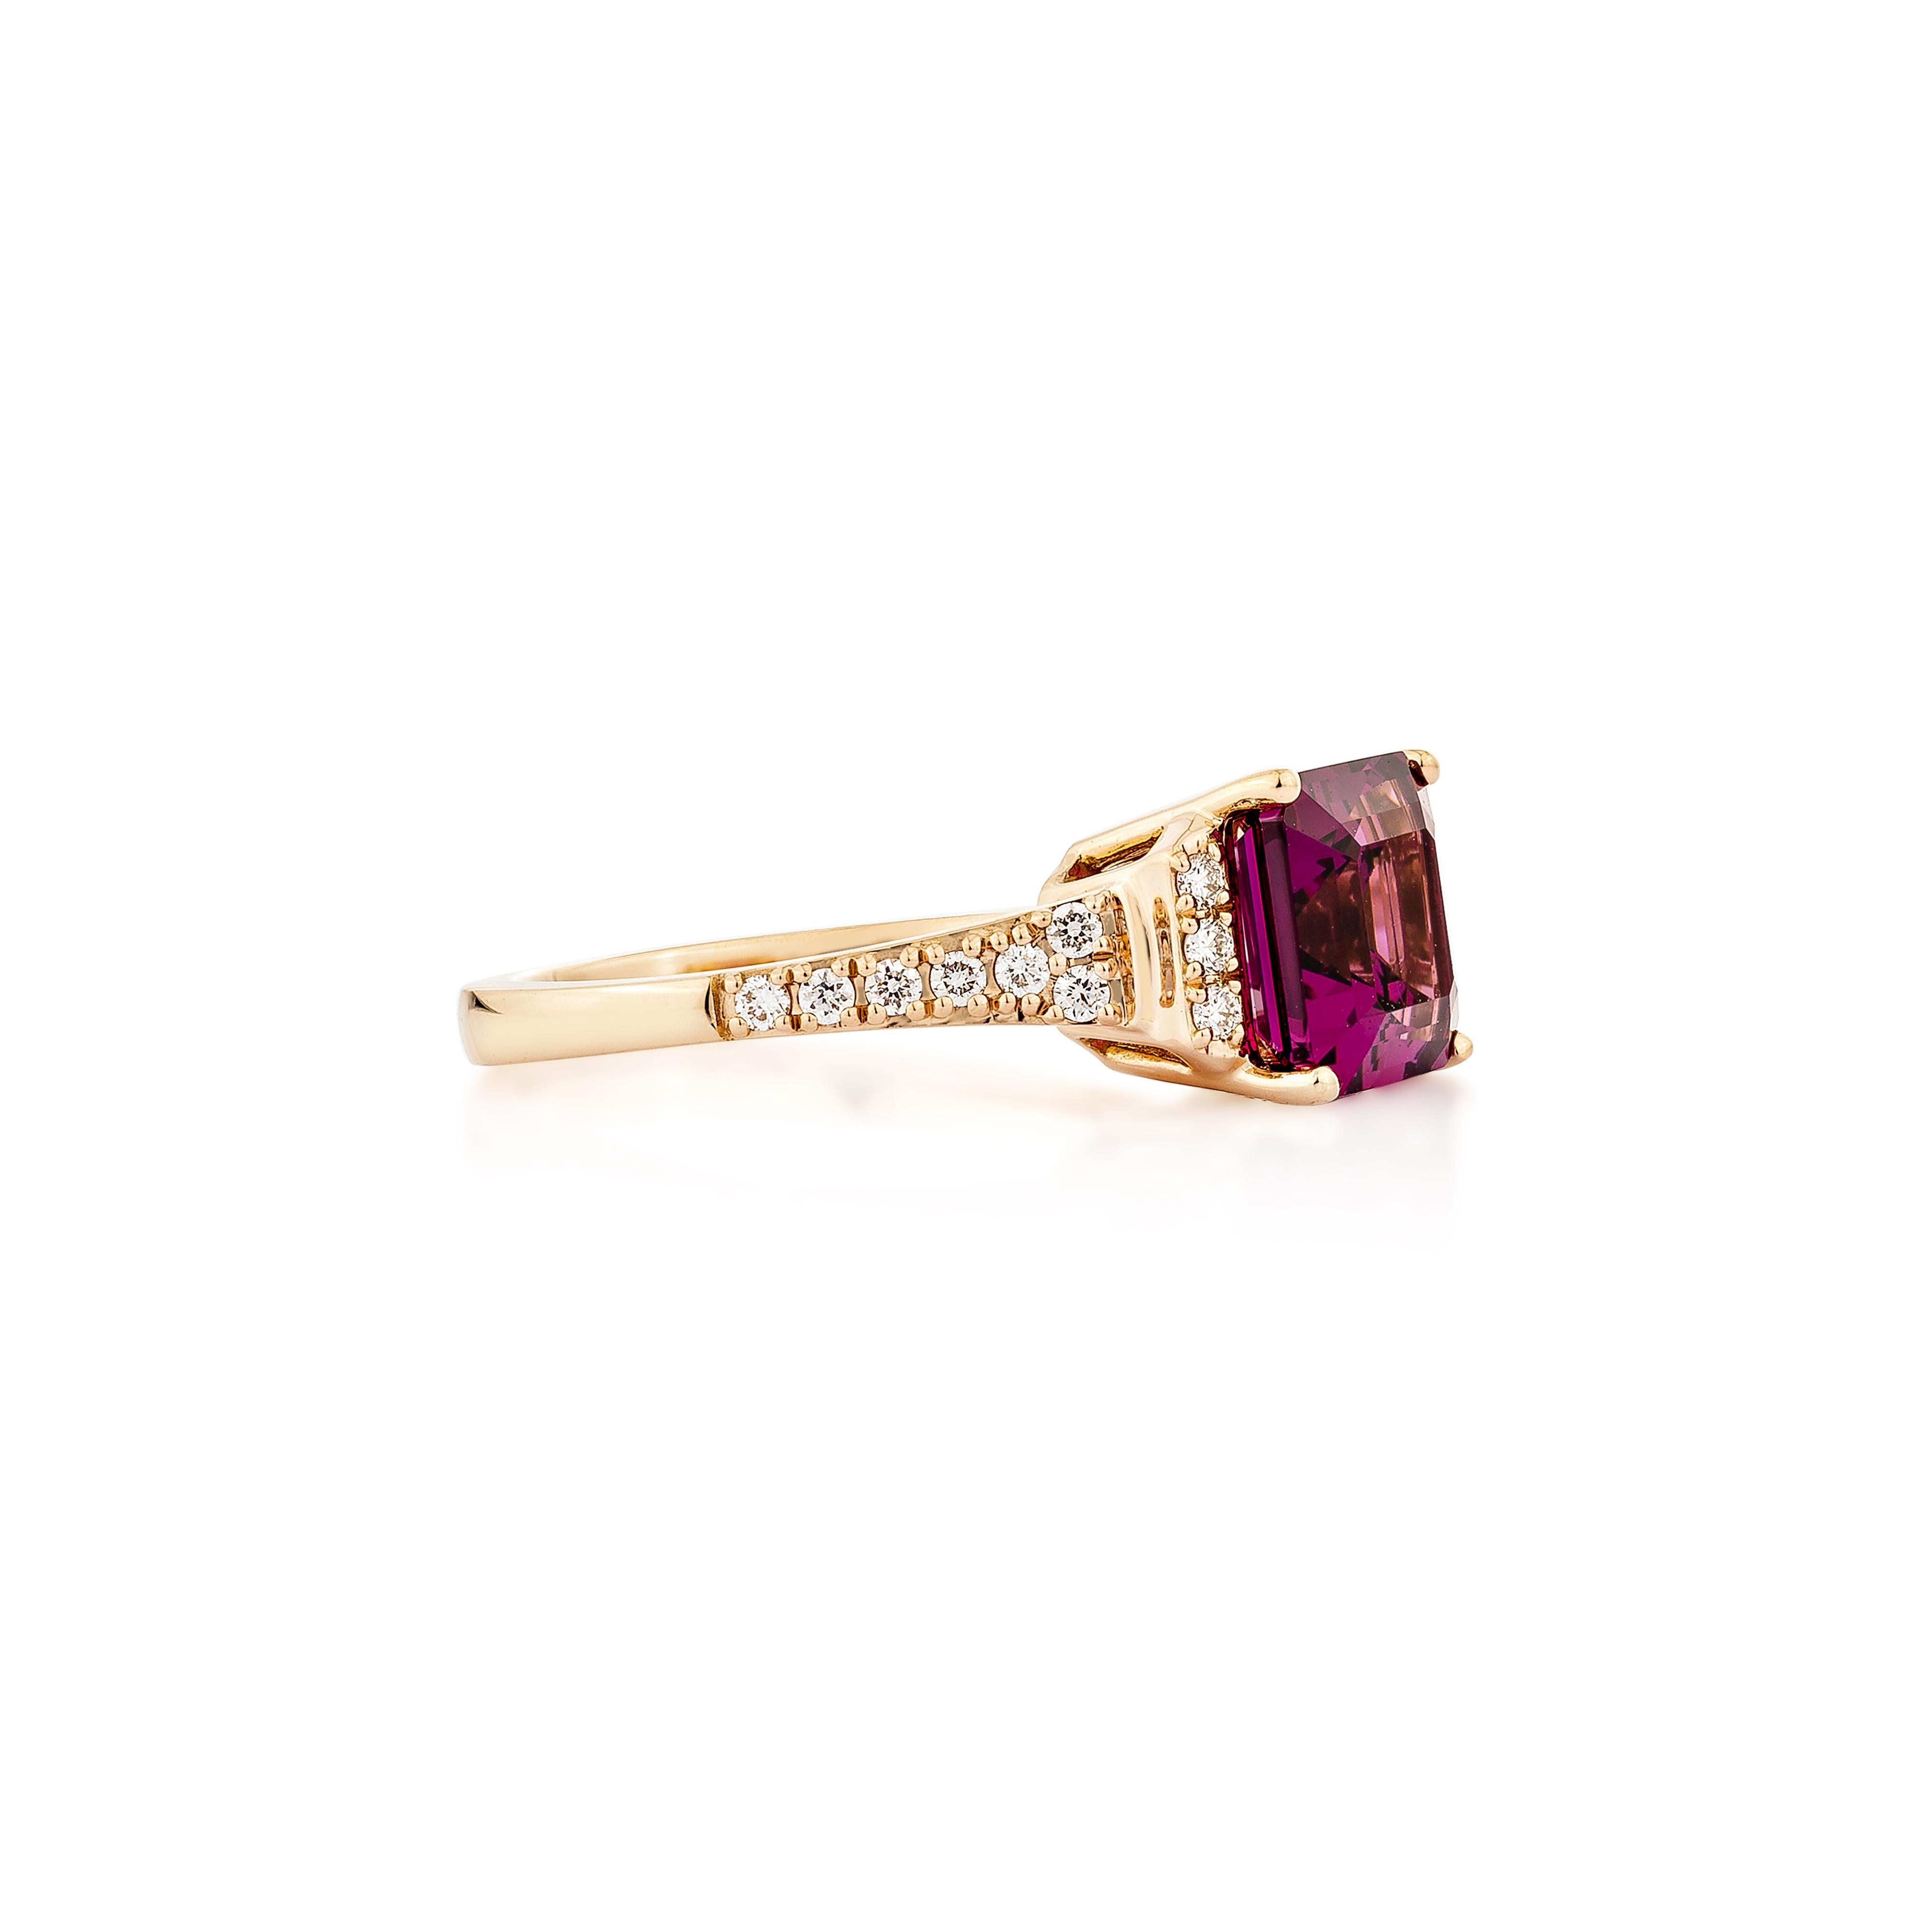 Präsentiert Eine schöne Auswahl an Juwelen, darunter Peridot und Rhodolith. ist ideal für Menschen, die Qualität zu schätzen wissen und sie zu jeder Gelegenheit oder Party tragen möchten. Einer von ihnen ist ein roségoldener Rhodolith-Ring mit einem